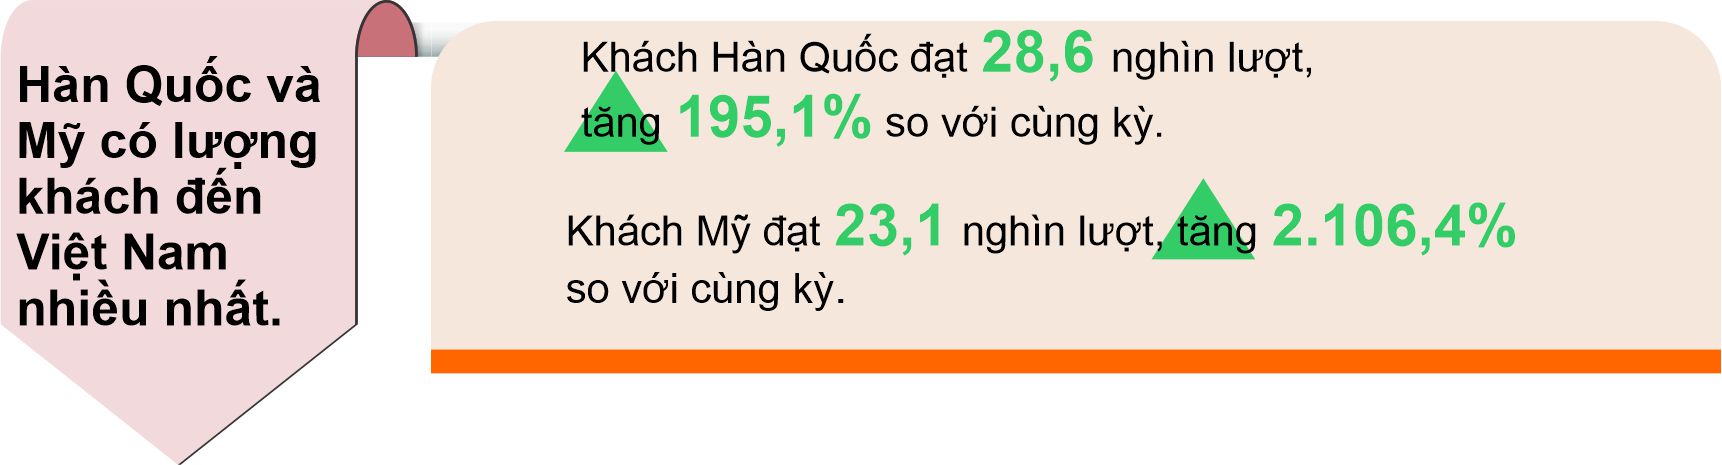 4 tháng đầu năm khách quốc tế đến Việt Nam tăng 284,7% so với cùng kỳ - Ảnh 2.